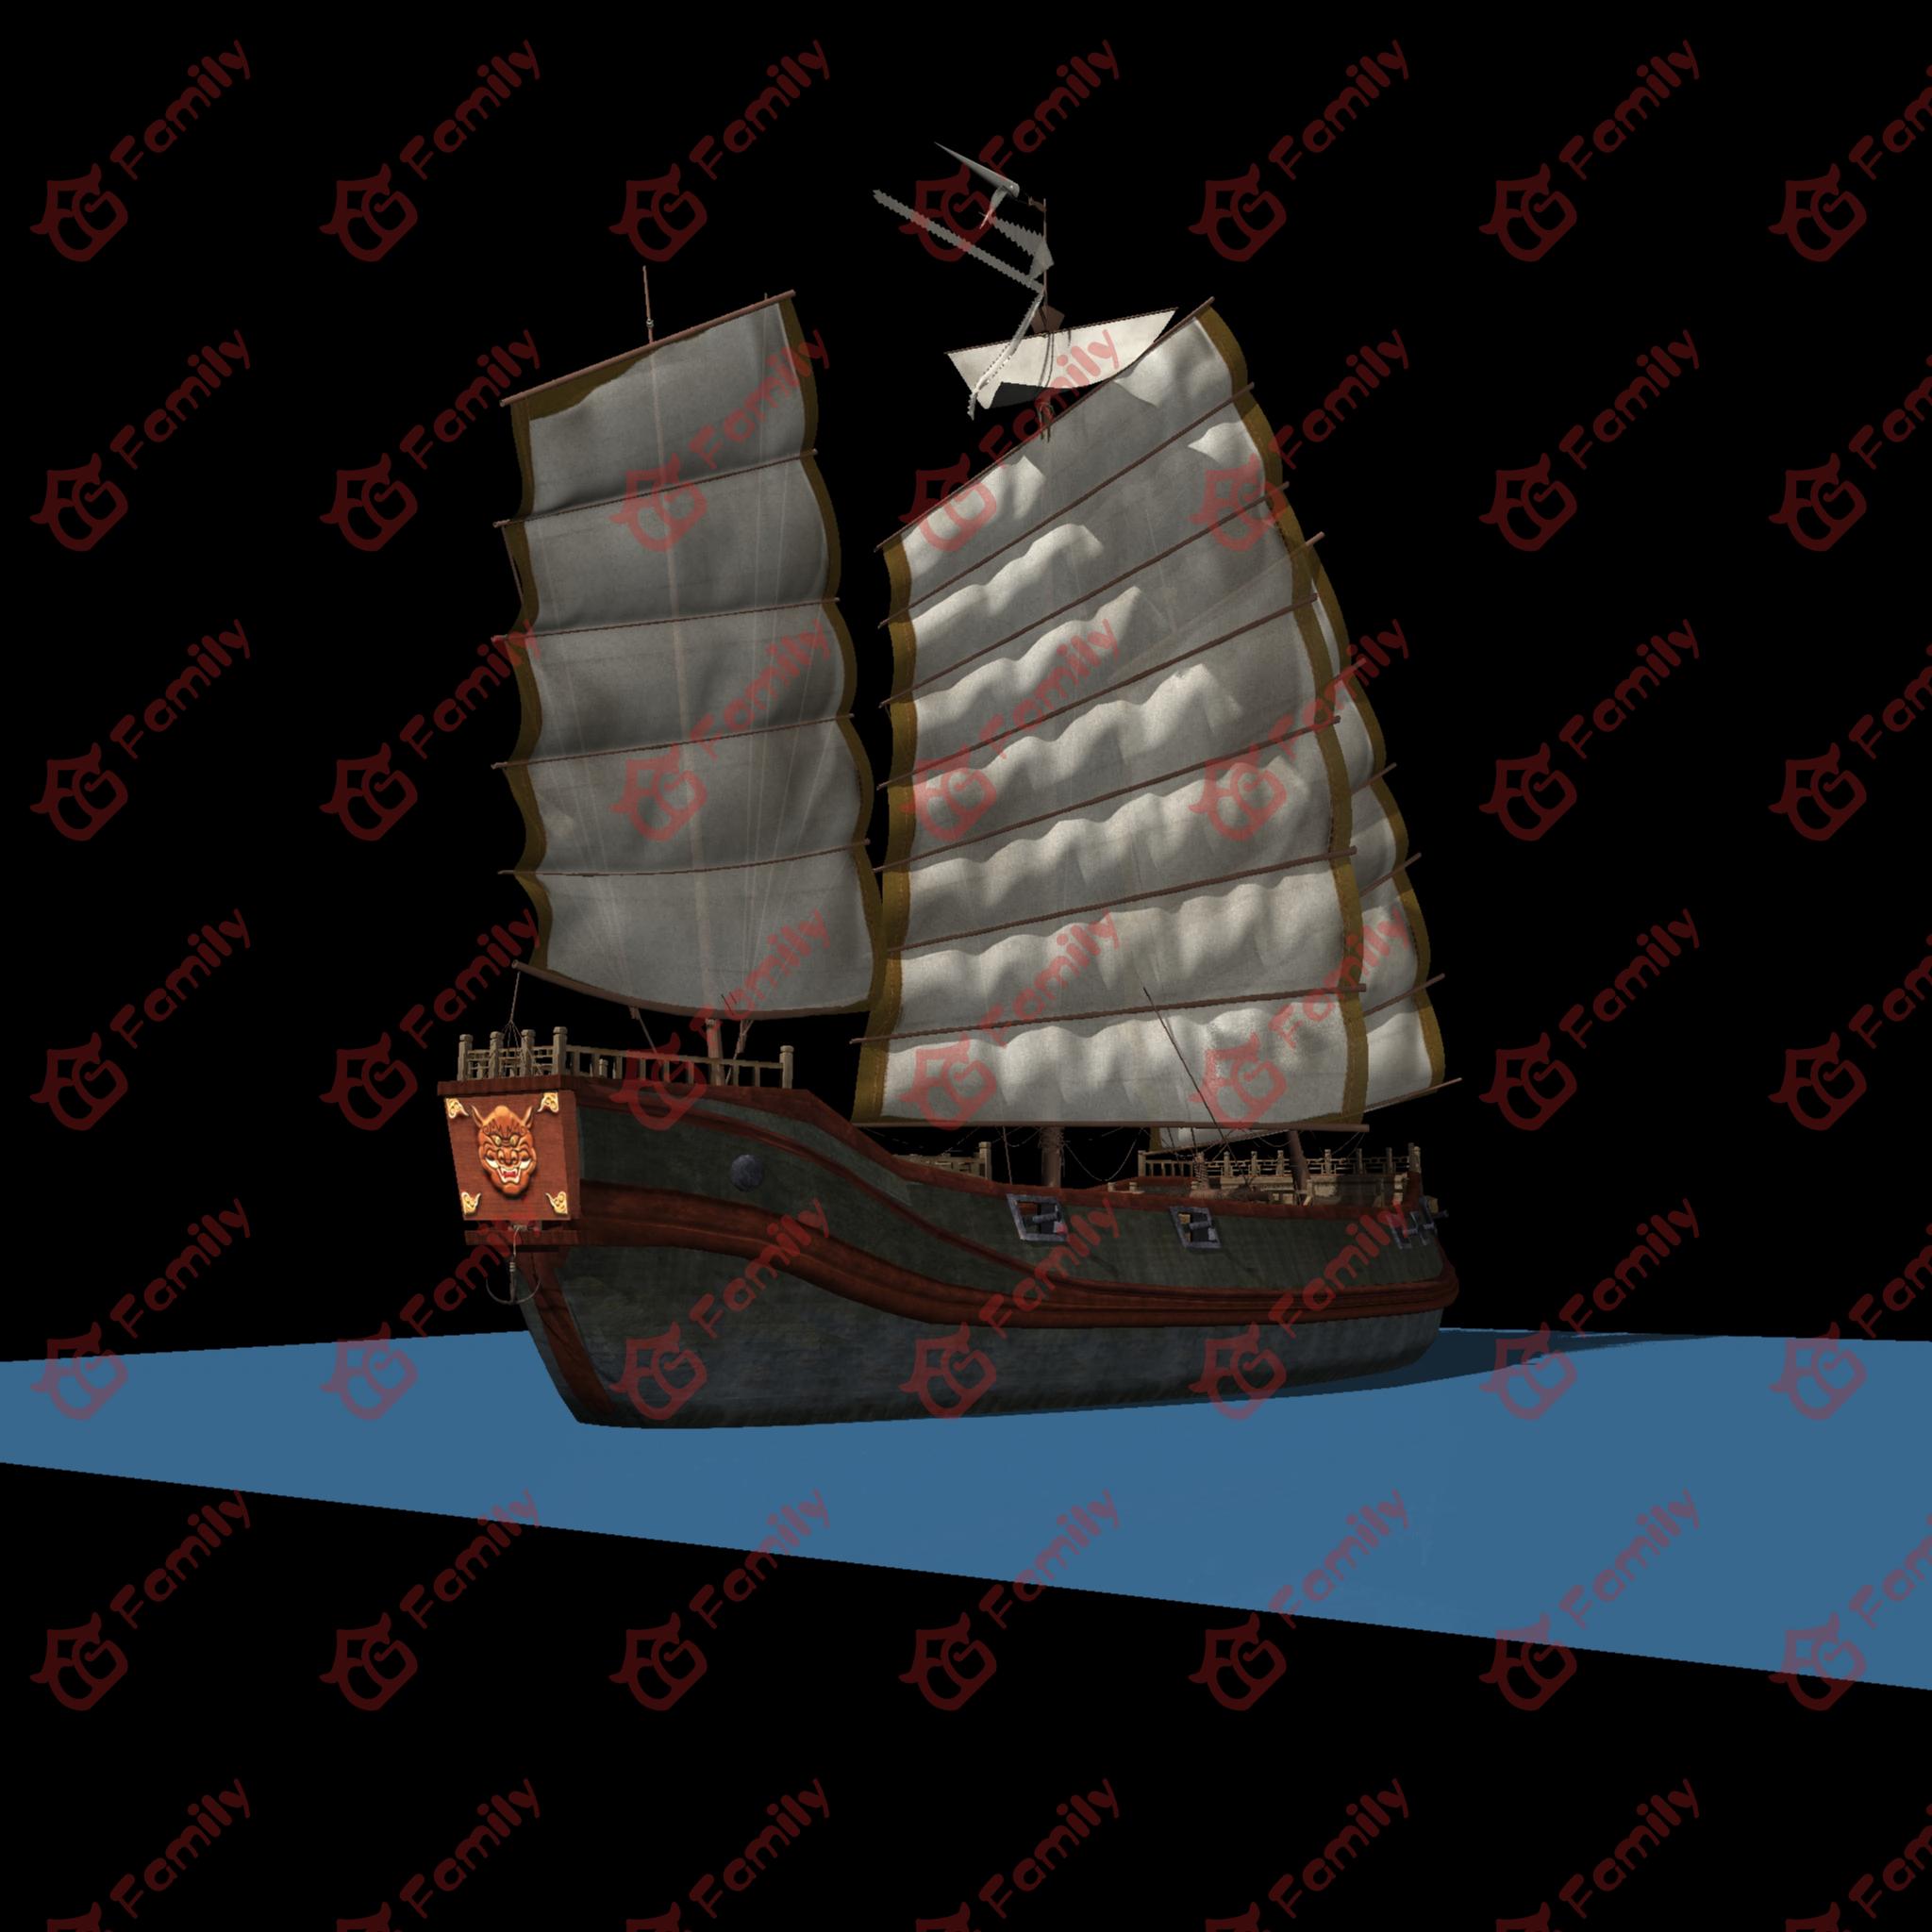 古代炮船 古代船只 古代运输 货船 海上丝绸之路 西洋船 中国古代船 中国船